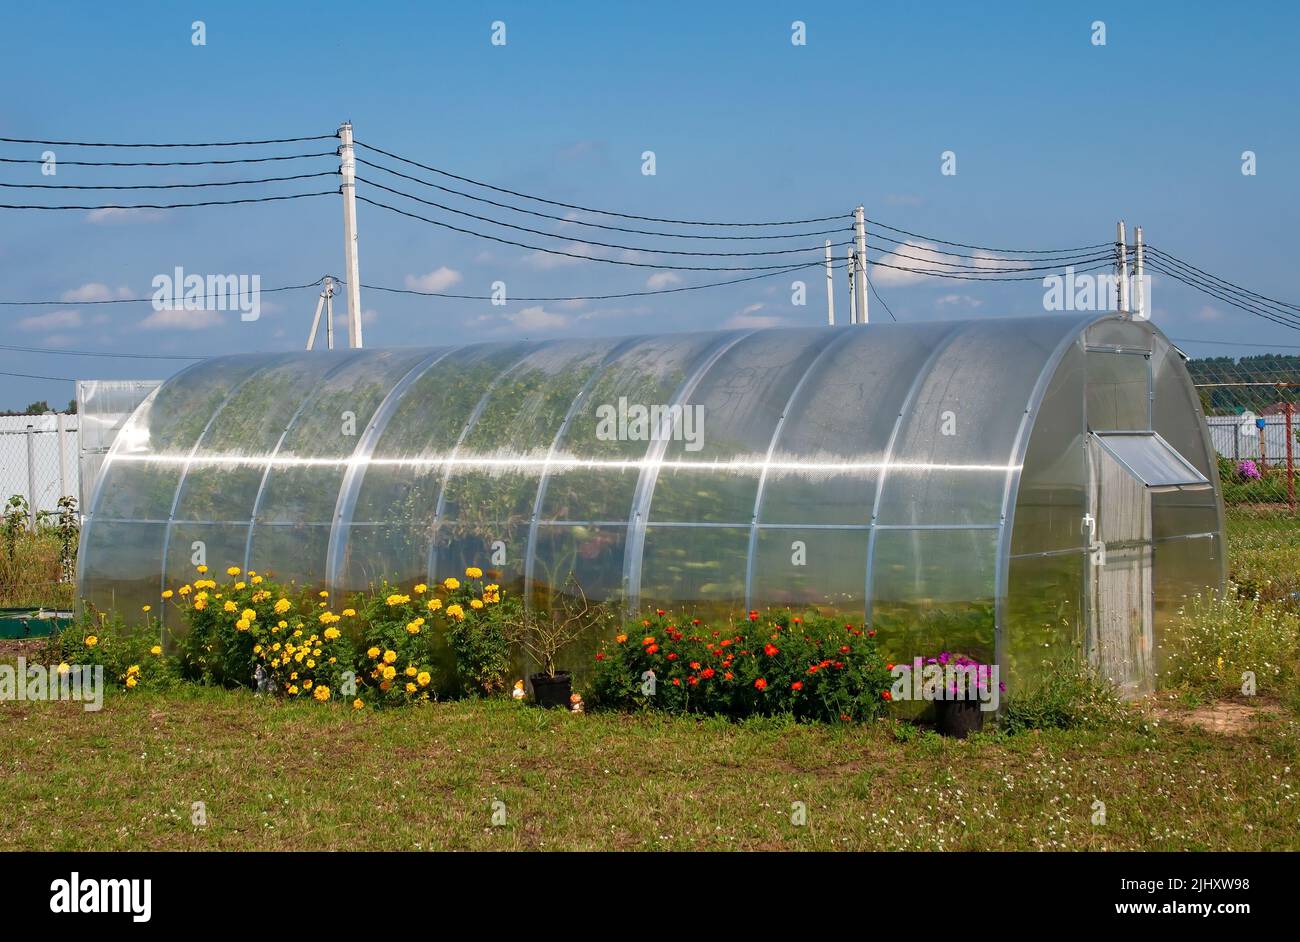 Greenhouse made of polycarbonate country garden garden gardener. Stock Photo